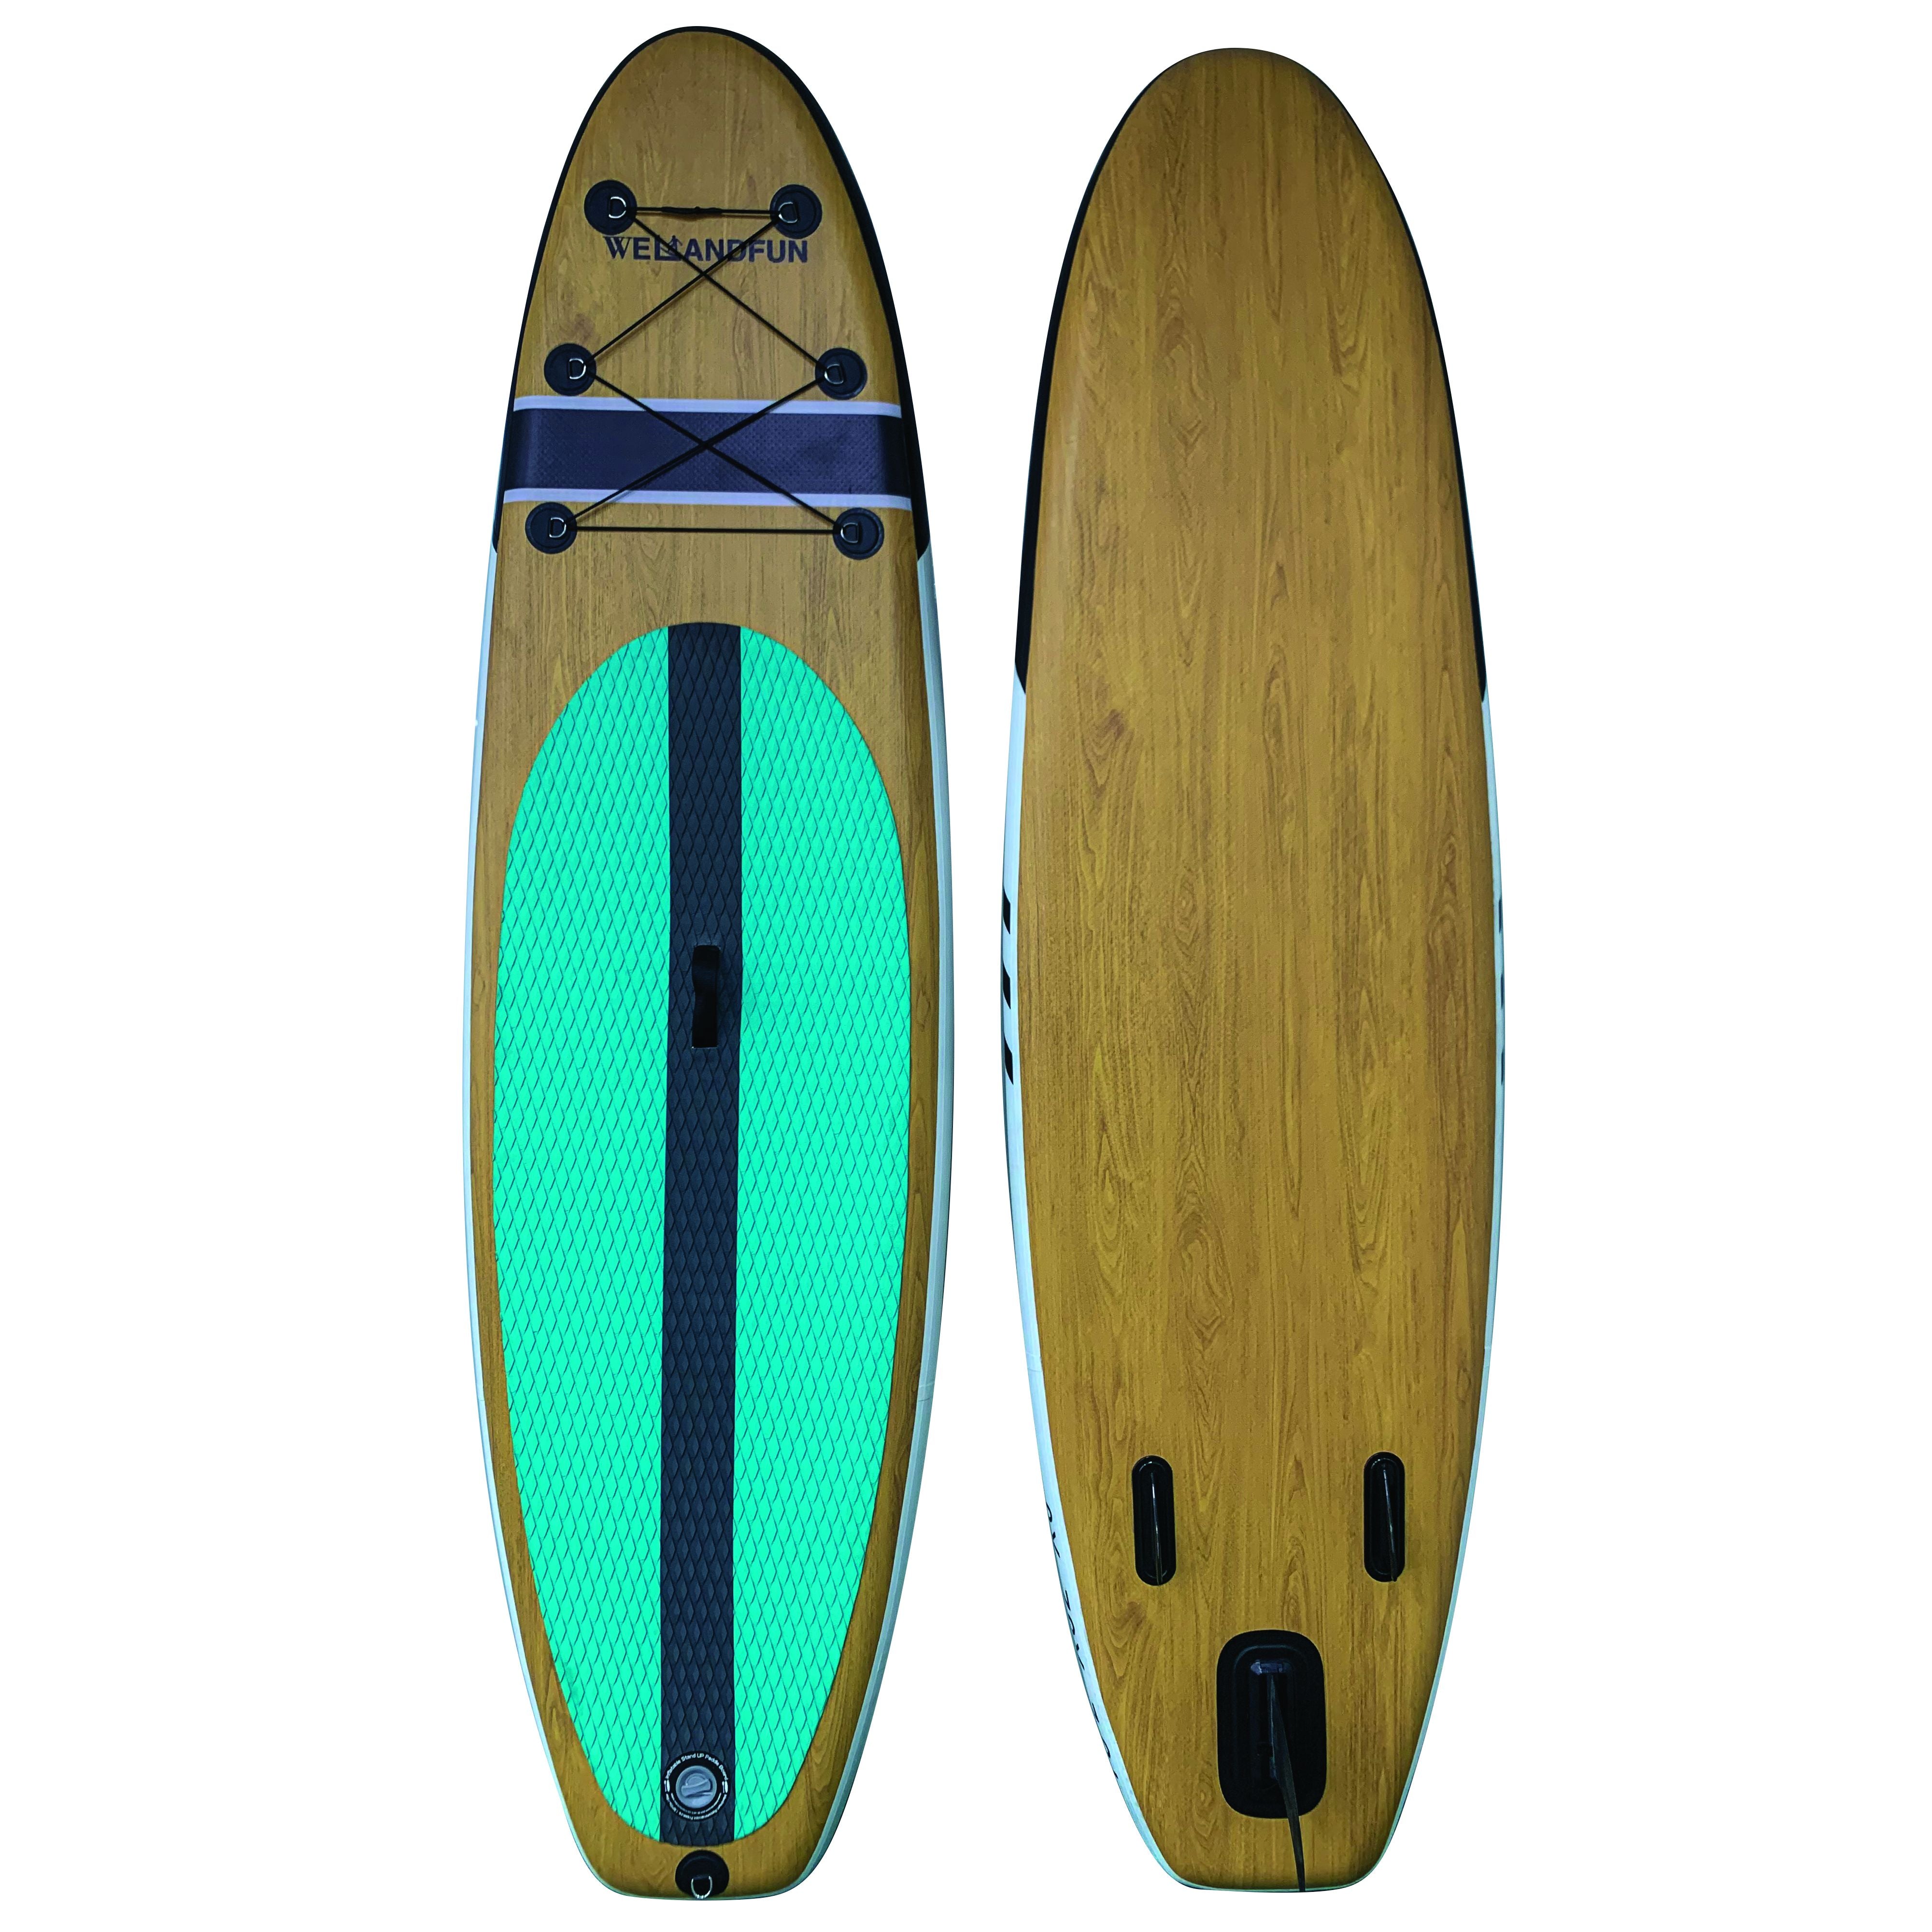 HISUP HISUP04 - Hi Sup Inflatable Board Wood/Green/Black 9'8"